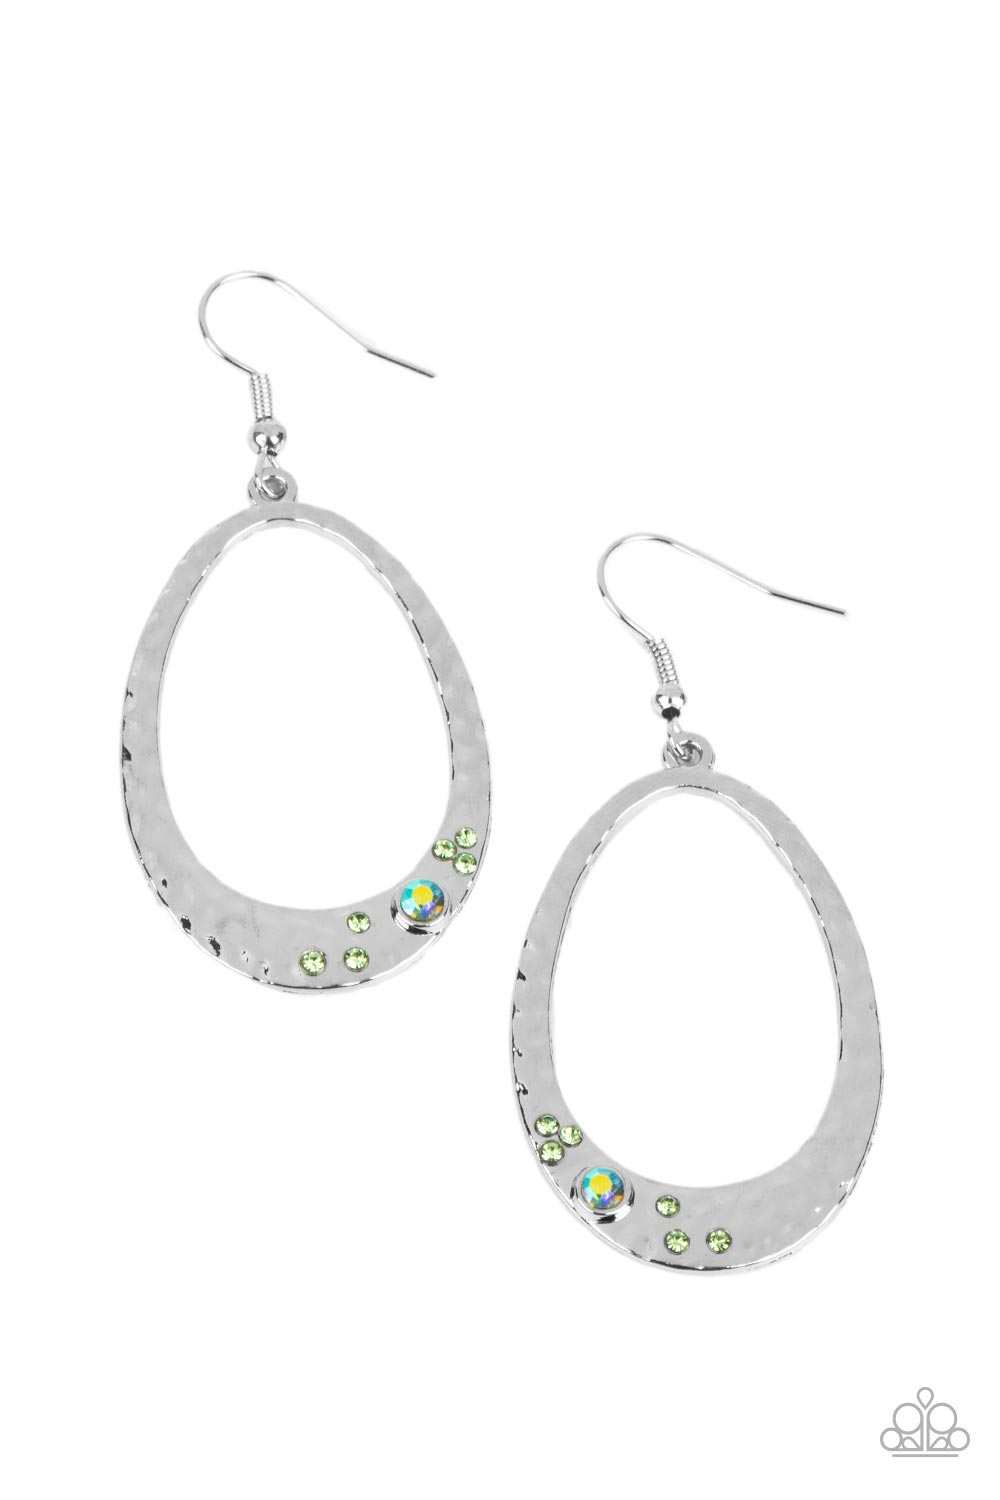 Seafoam Shimmer - green - Paparazzi earrings